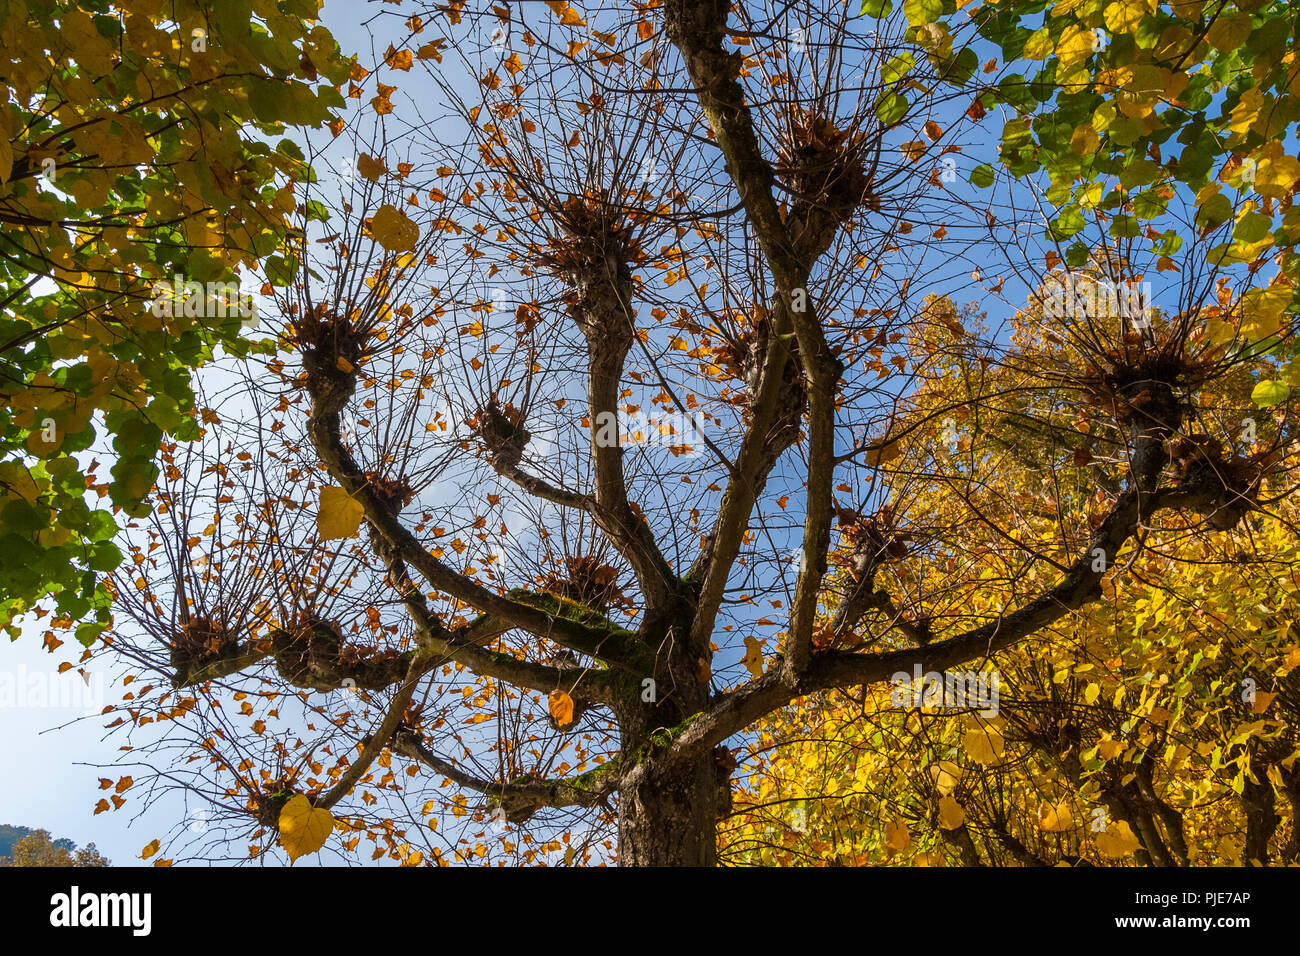 Low angle shot d'un tilleul (Tilia) avec boutons à la fin de ses grosses branches dans un parc dans la ville Bad Karlshafen, Allemagne. Il a perdu près de... Banque D'Images